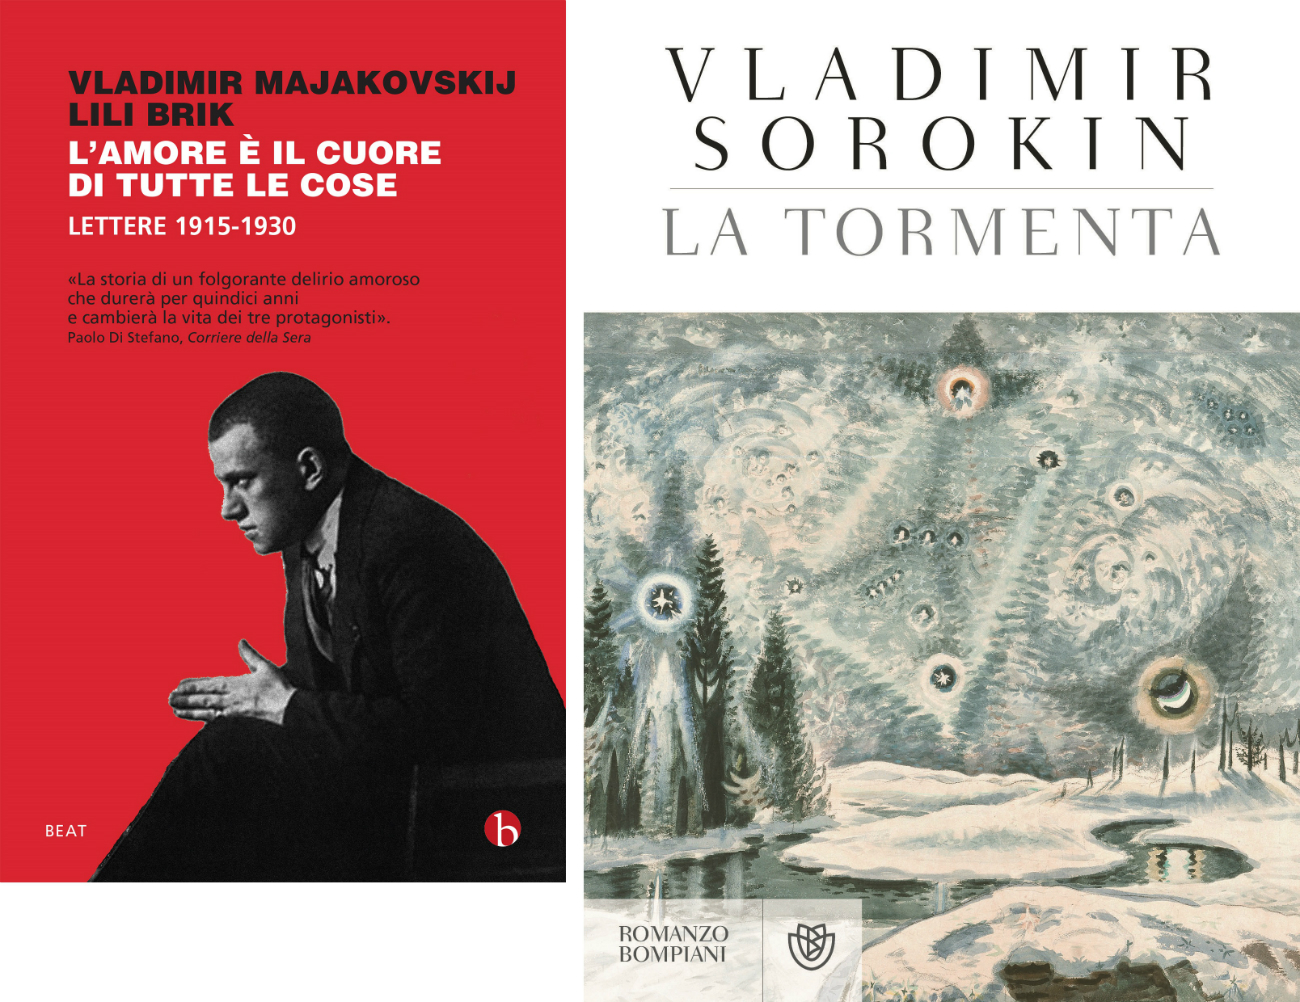 Le copertine del libro “L’amore è il cuore di tutte le cose” che raccoglie la corrispondenza di Vladimir Mayakovskij e del romanzo “La tormenta” di Vladimir Sorokin. 